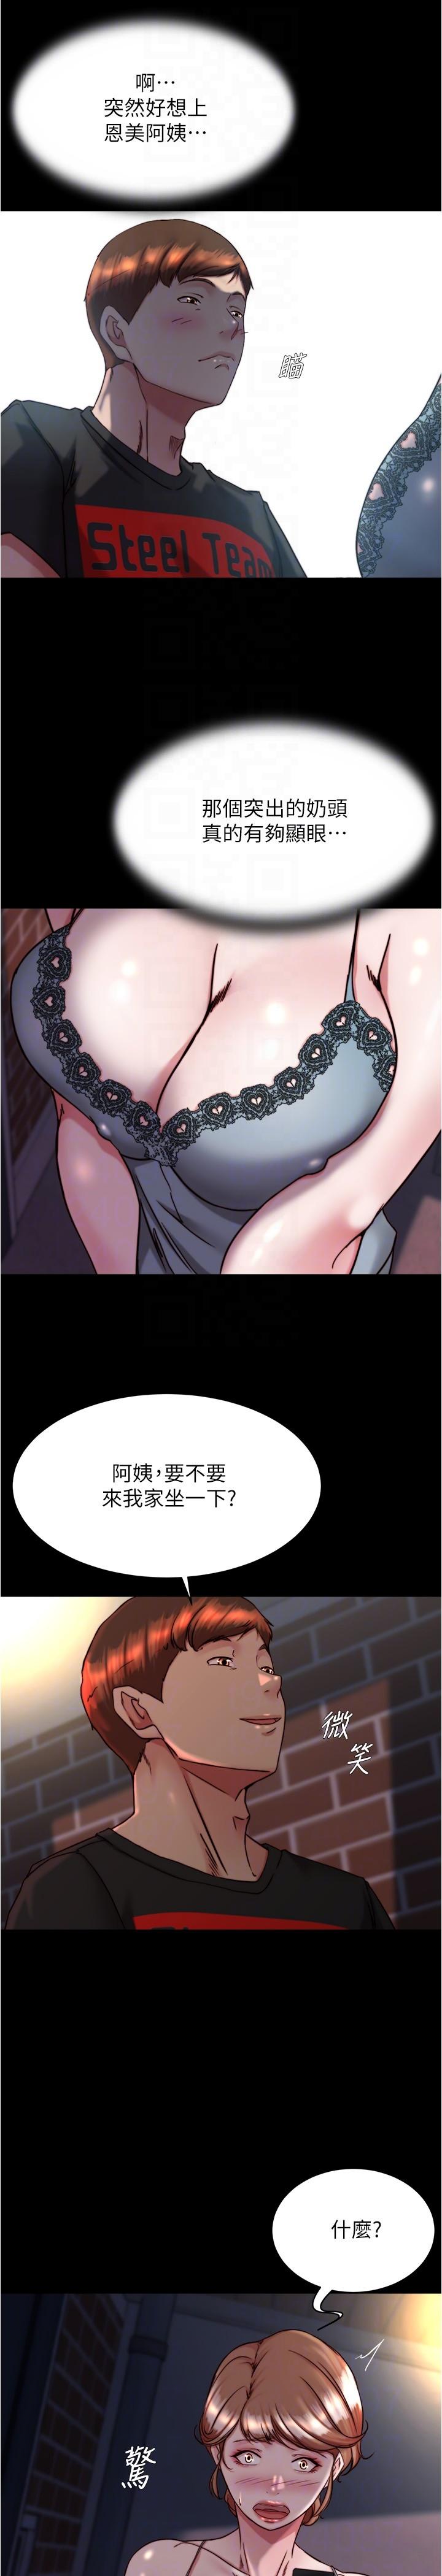 韩国污漫画 小褲褲筆記 第138话-成为性奴隶的穗桦 28